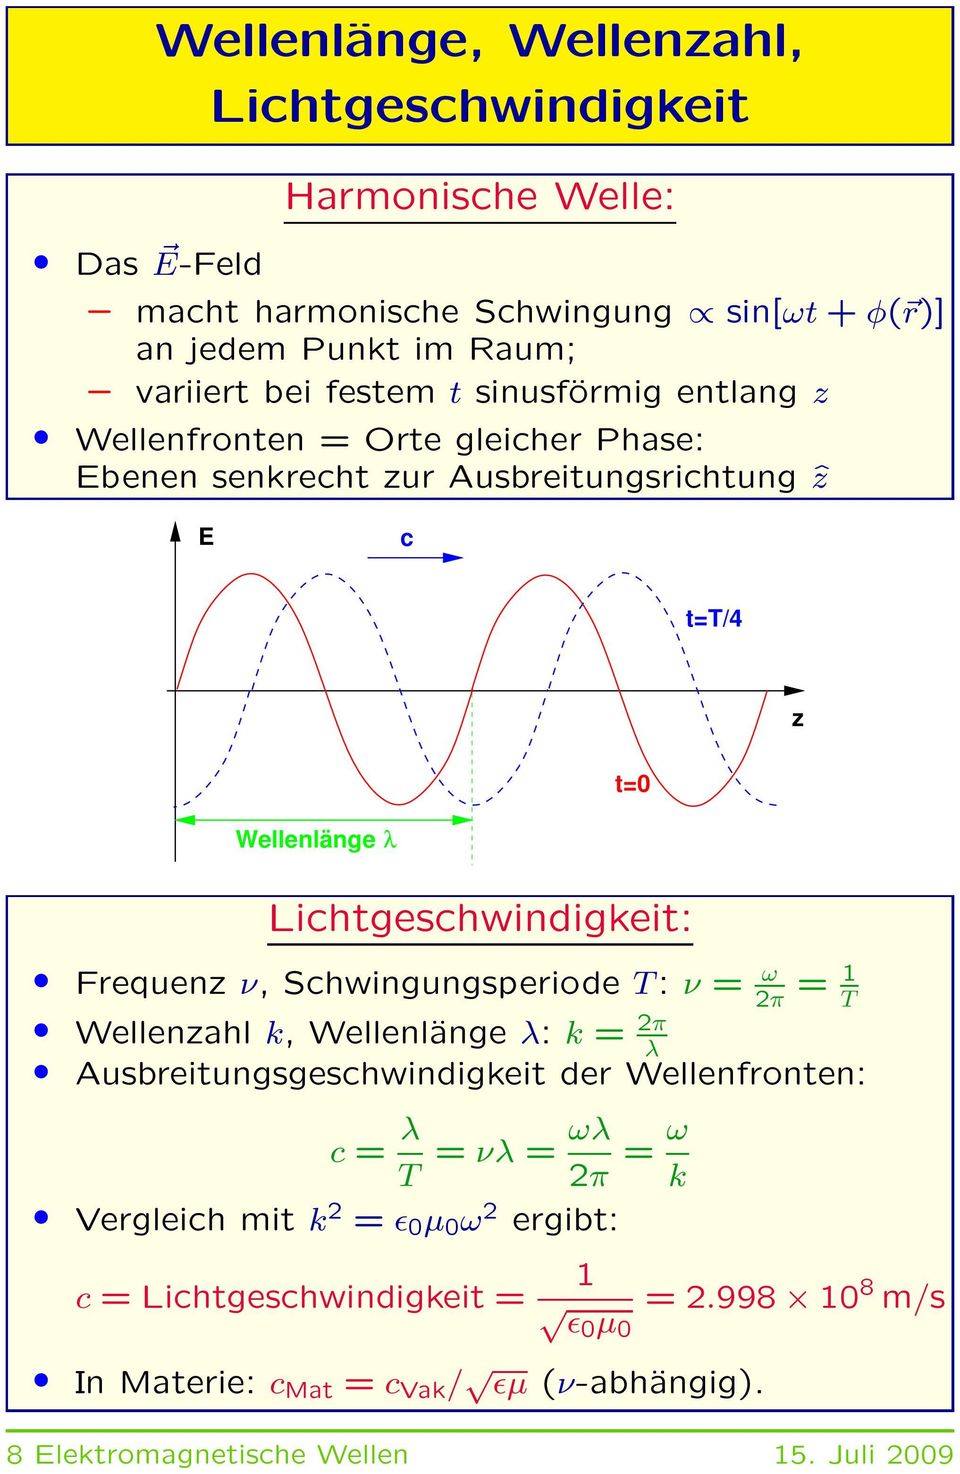 Frequenz ν, Schwingungsperiode T: ν = ω 2π = 1 T Wellenzahl k, Wellenlänge λ: k = 2π λ Ausbreitungsgeschwindigkeit der Wellenfronten: c = λ ωλ = νλ = T 2π = ω